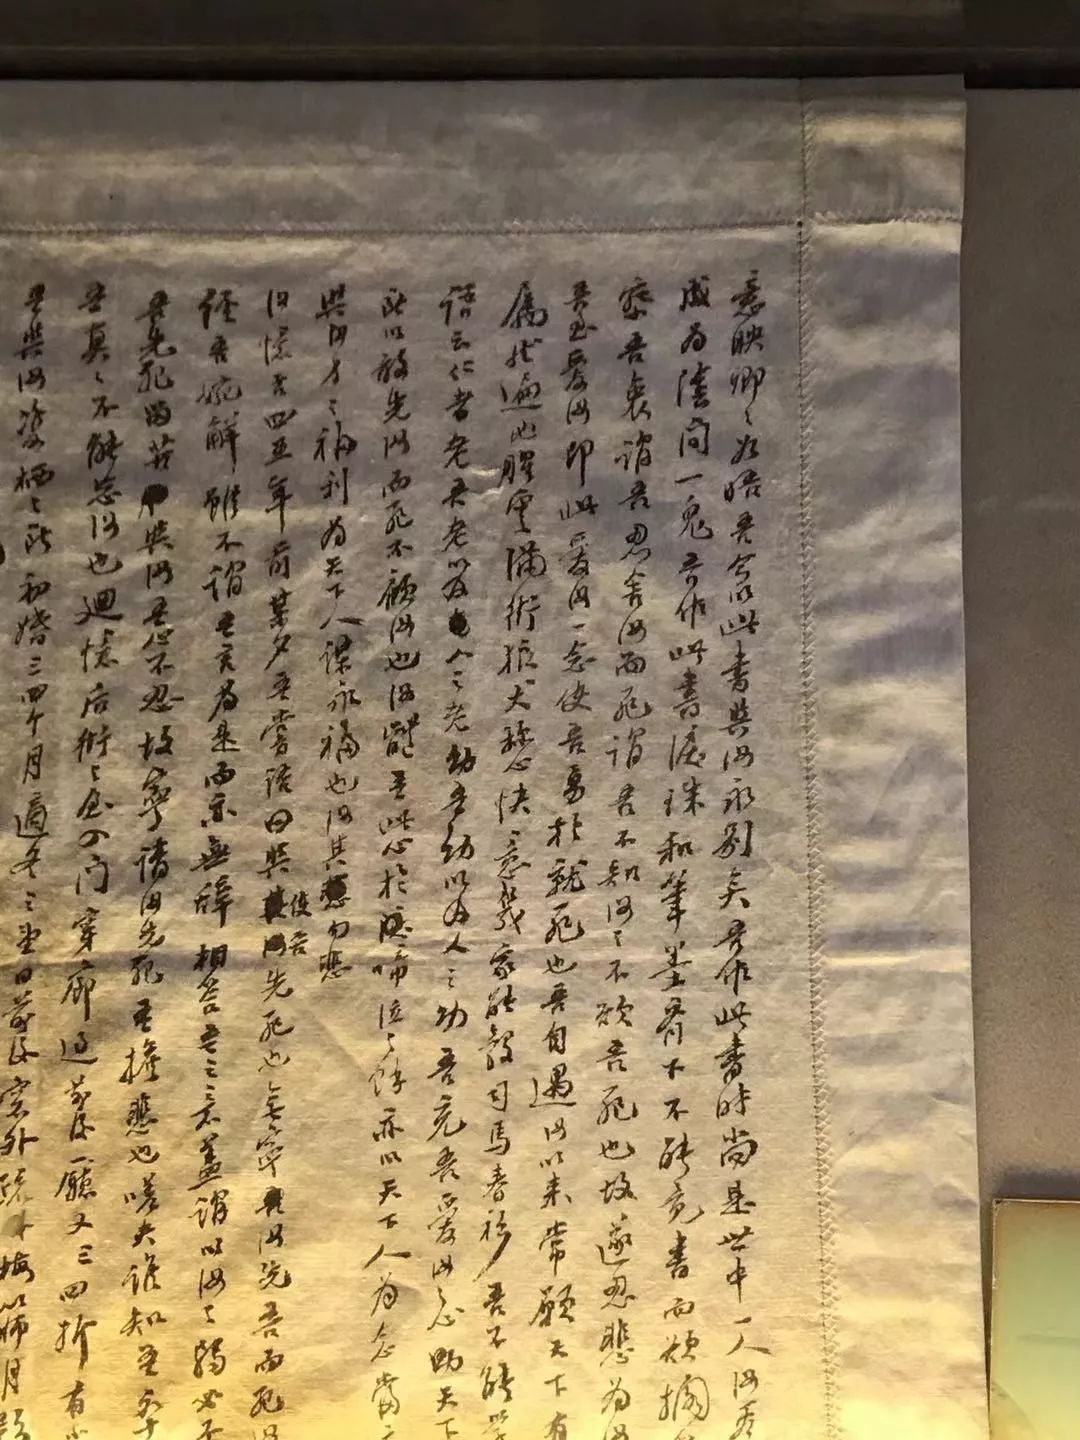 林觉民居所的小厅处,陈列着林觉民《与妻书》手迹原文的复印件